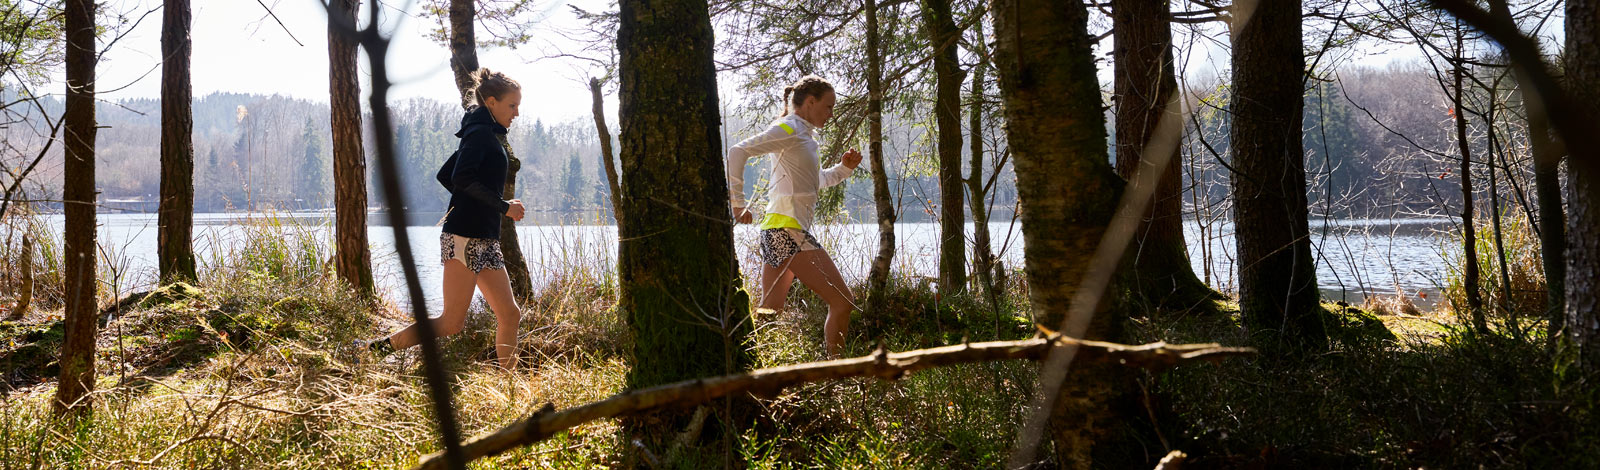 Zwei Läuferinnen laufen hinter Bäumen und vor einem kleinen See hintereinander über einen Waldweg